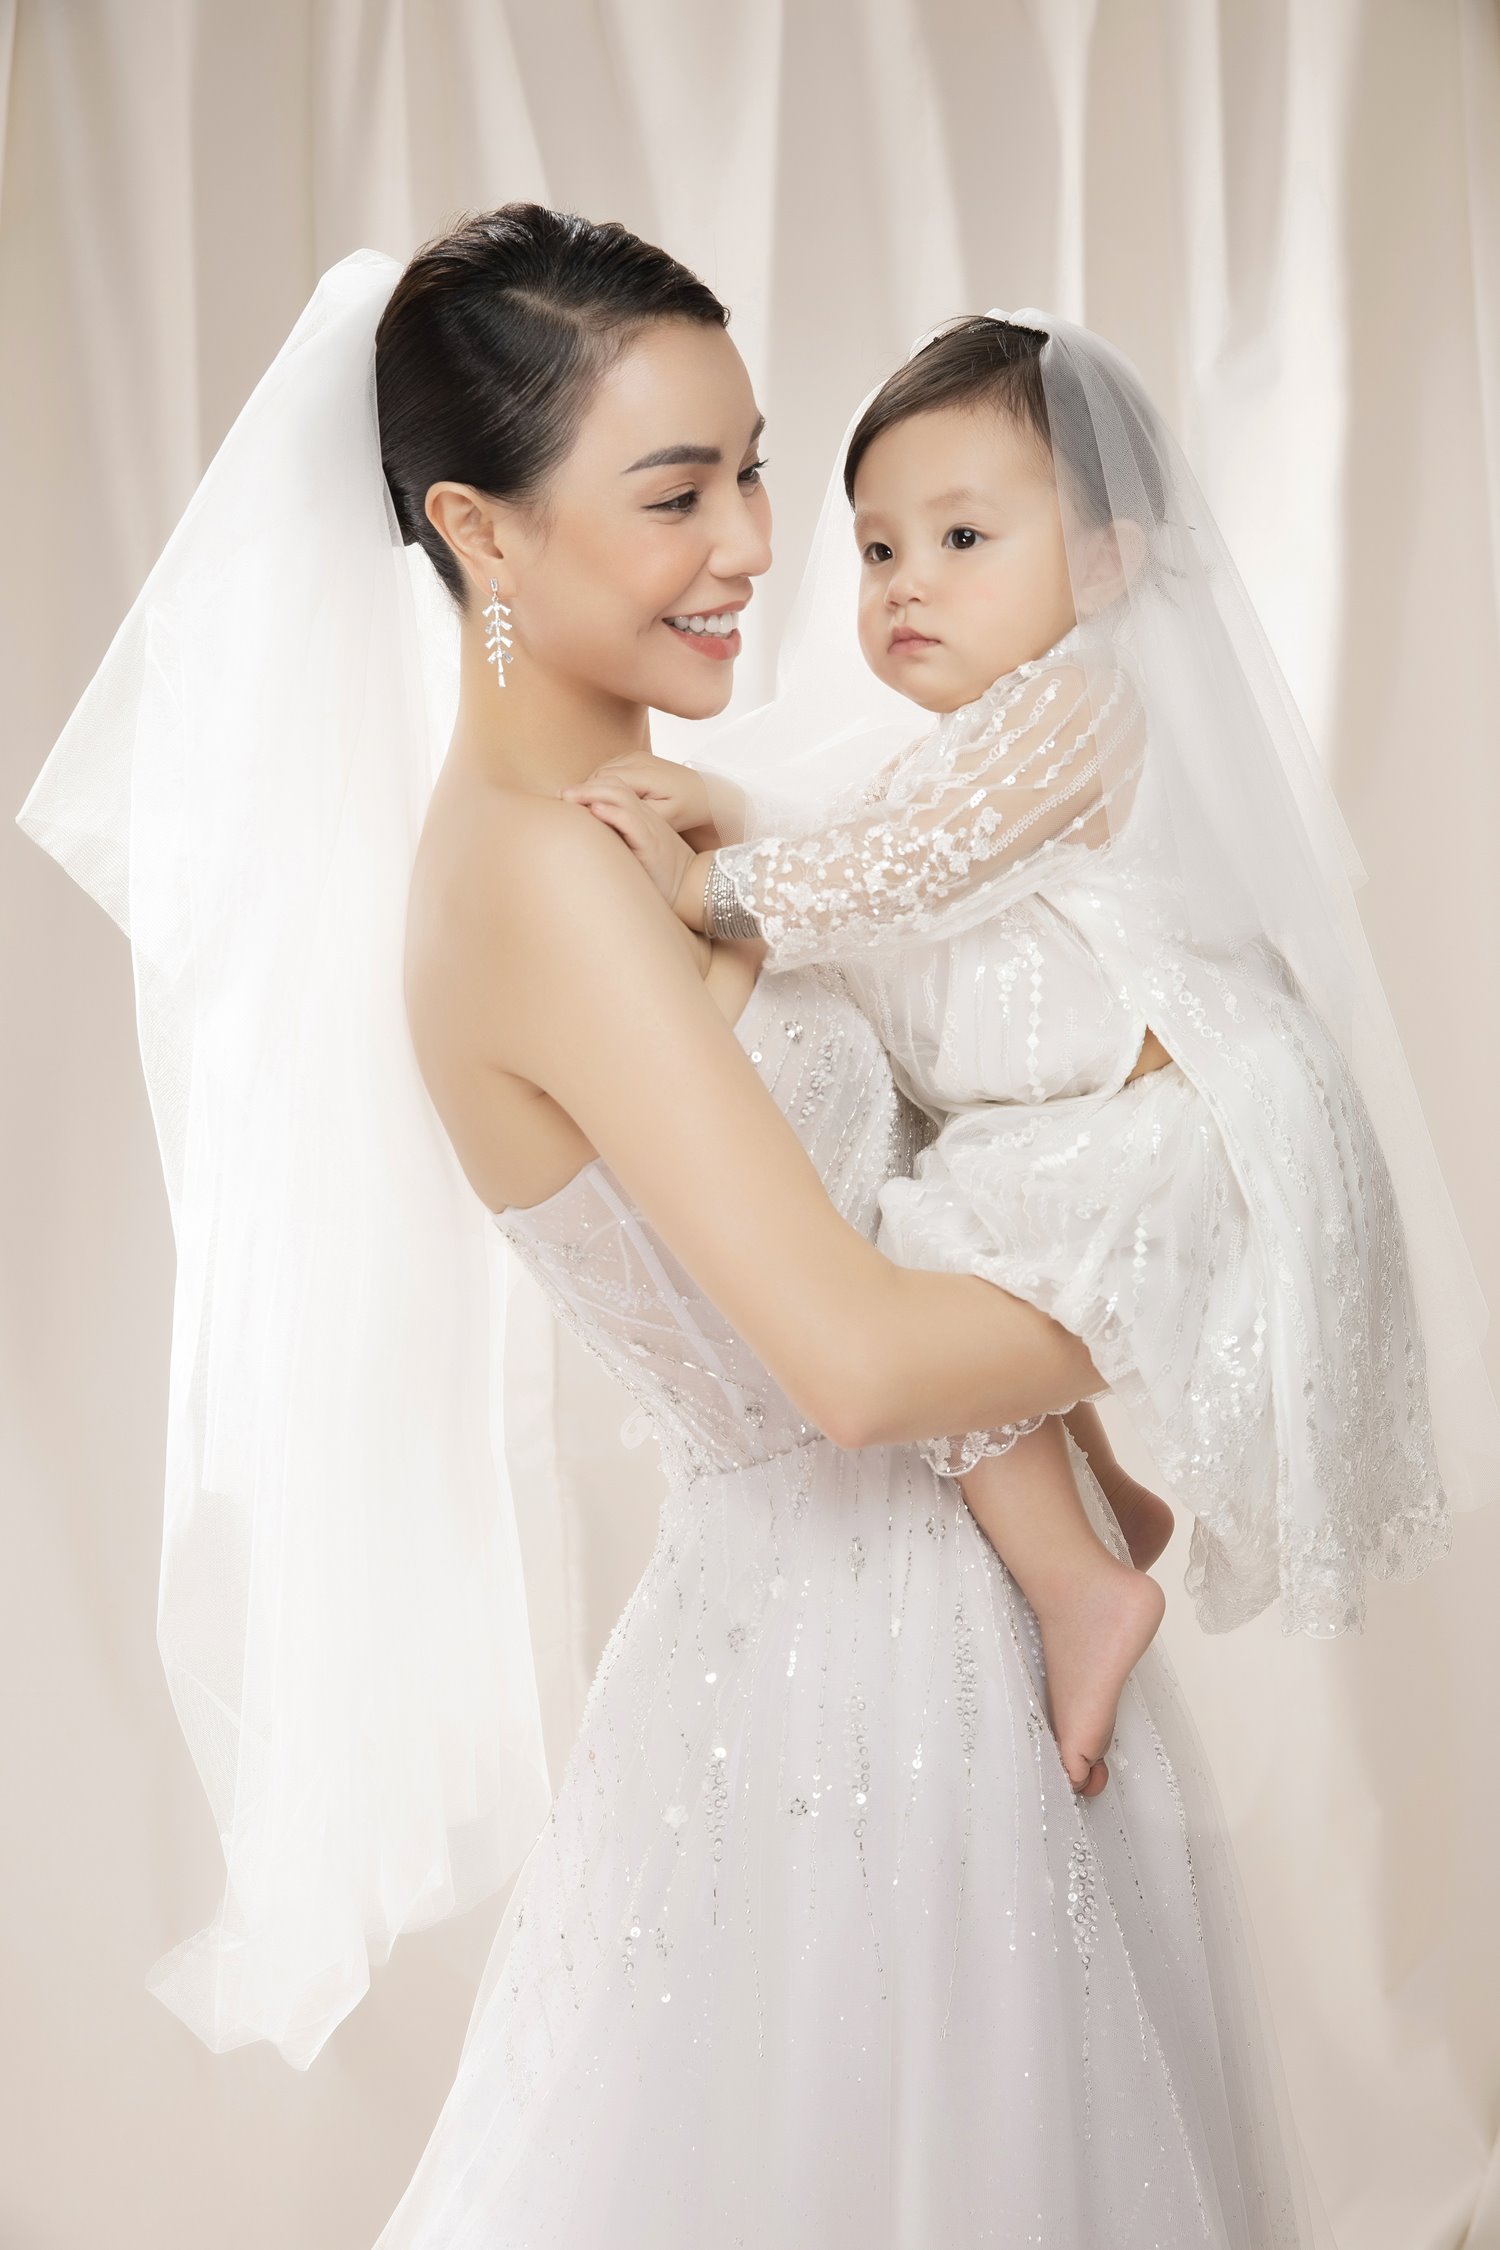 Trà Ngọc Hằng là biểu tượng sắc đẹp và phong cách thời trang của Việt Nam và được yêu mến bởi nhiều khán giả. Hãy thưởng thức bức ảnh chụp cưới của cô để cảm nhận sự tinh tế và sang trọng của một ngày trọng đại.